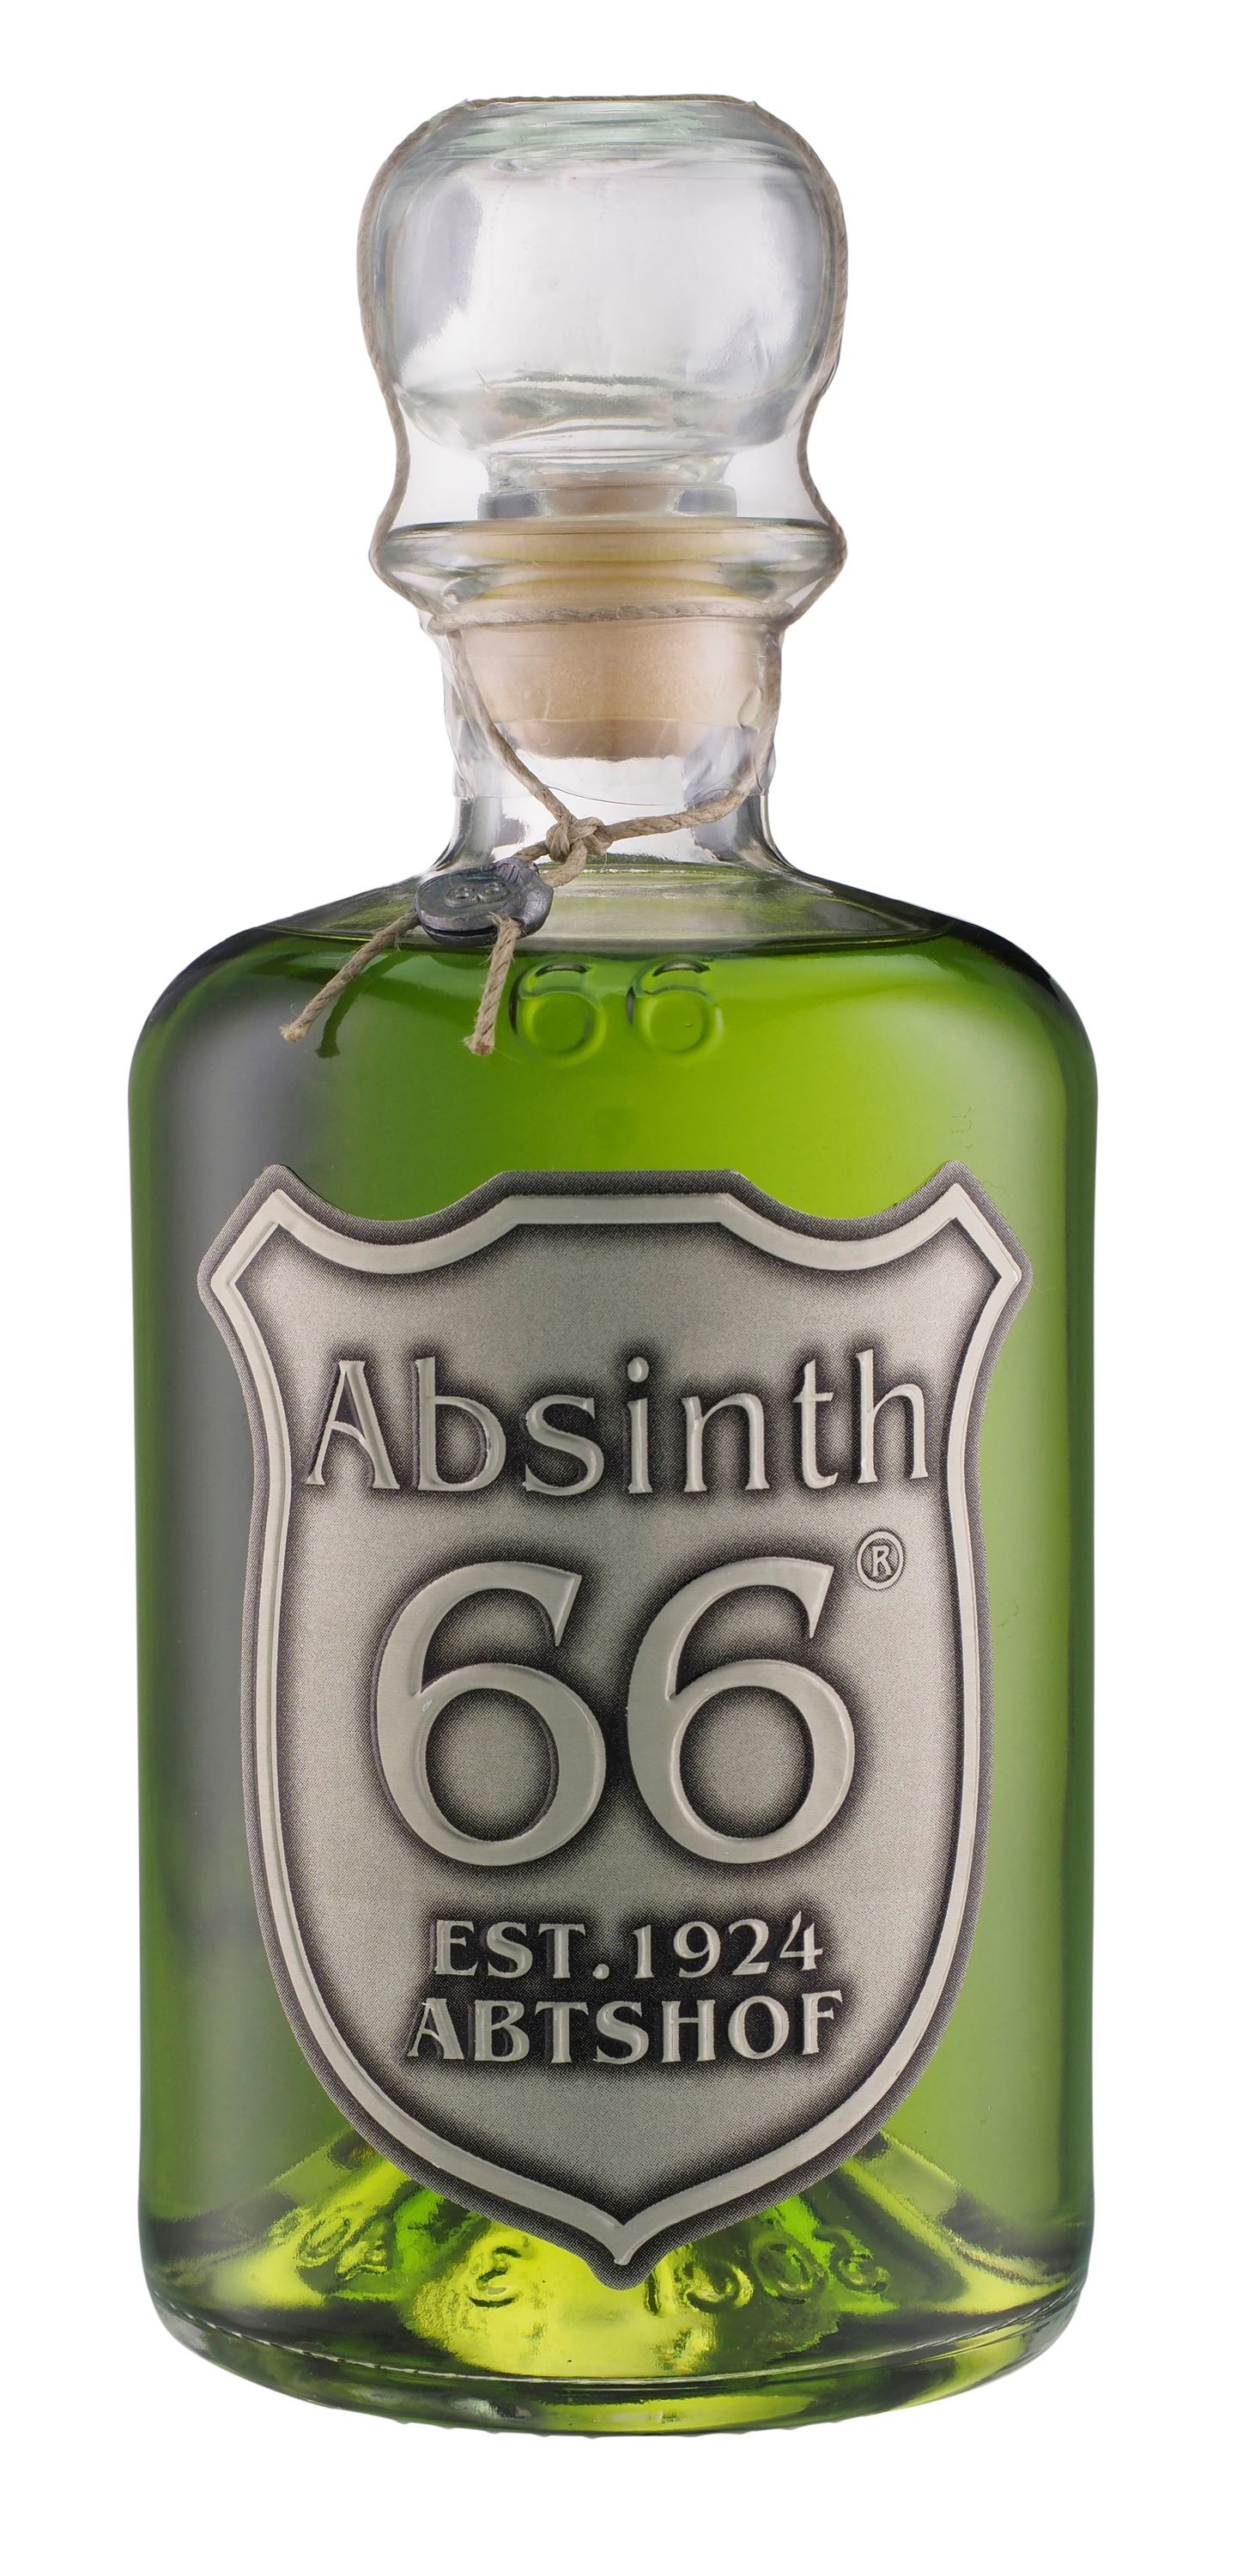 Absintti 66 Abtshof, 0,5l alk. 66 tilavuusprosenttia.